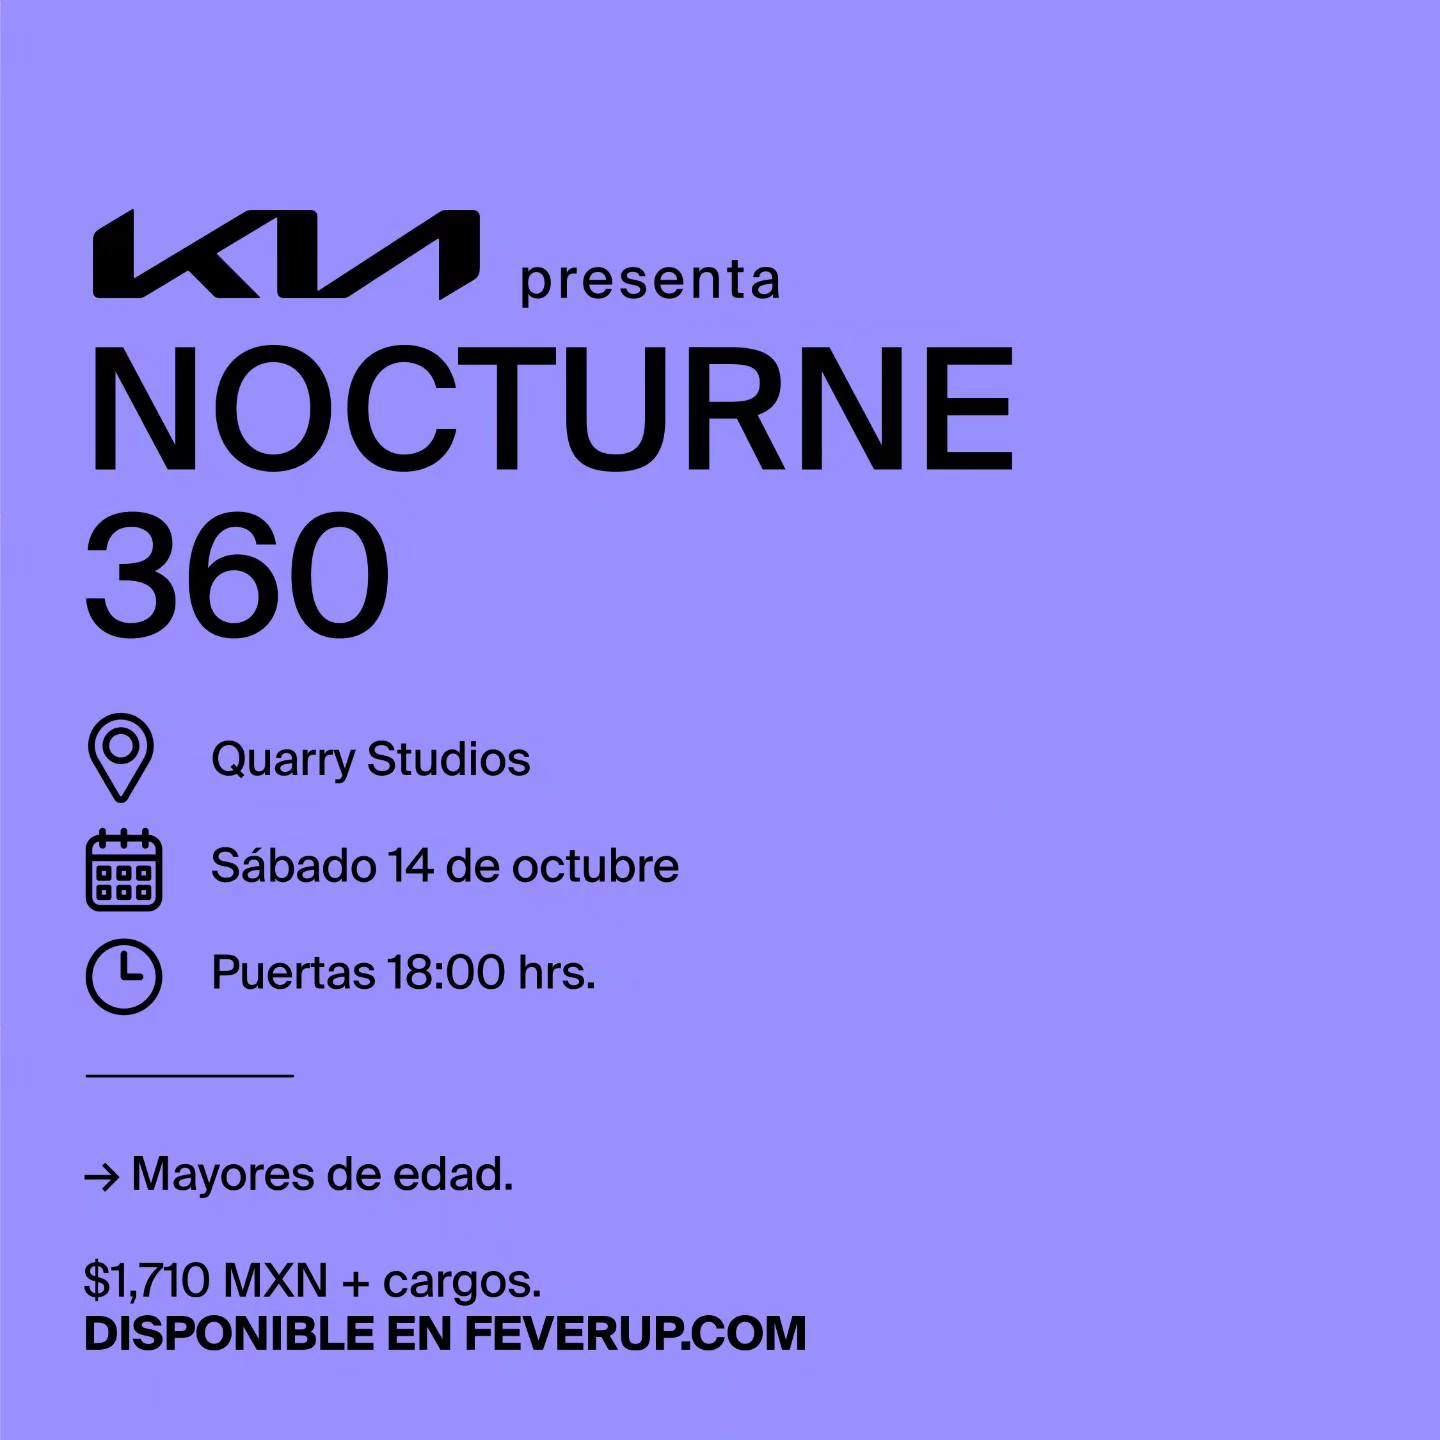 KIA presenta Nocturne 360 - フライヤー表